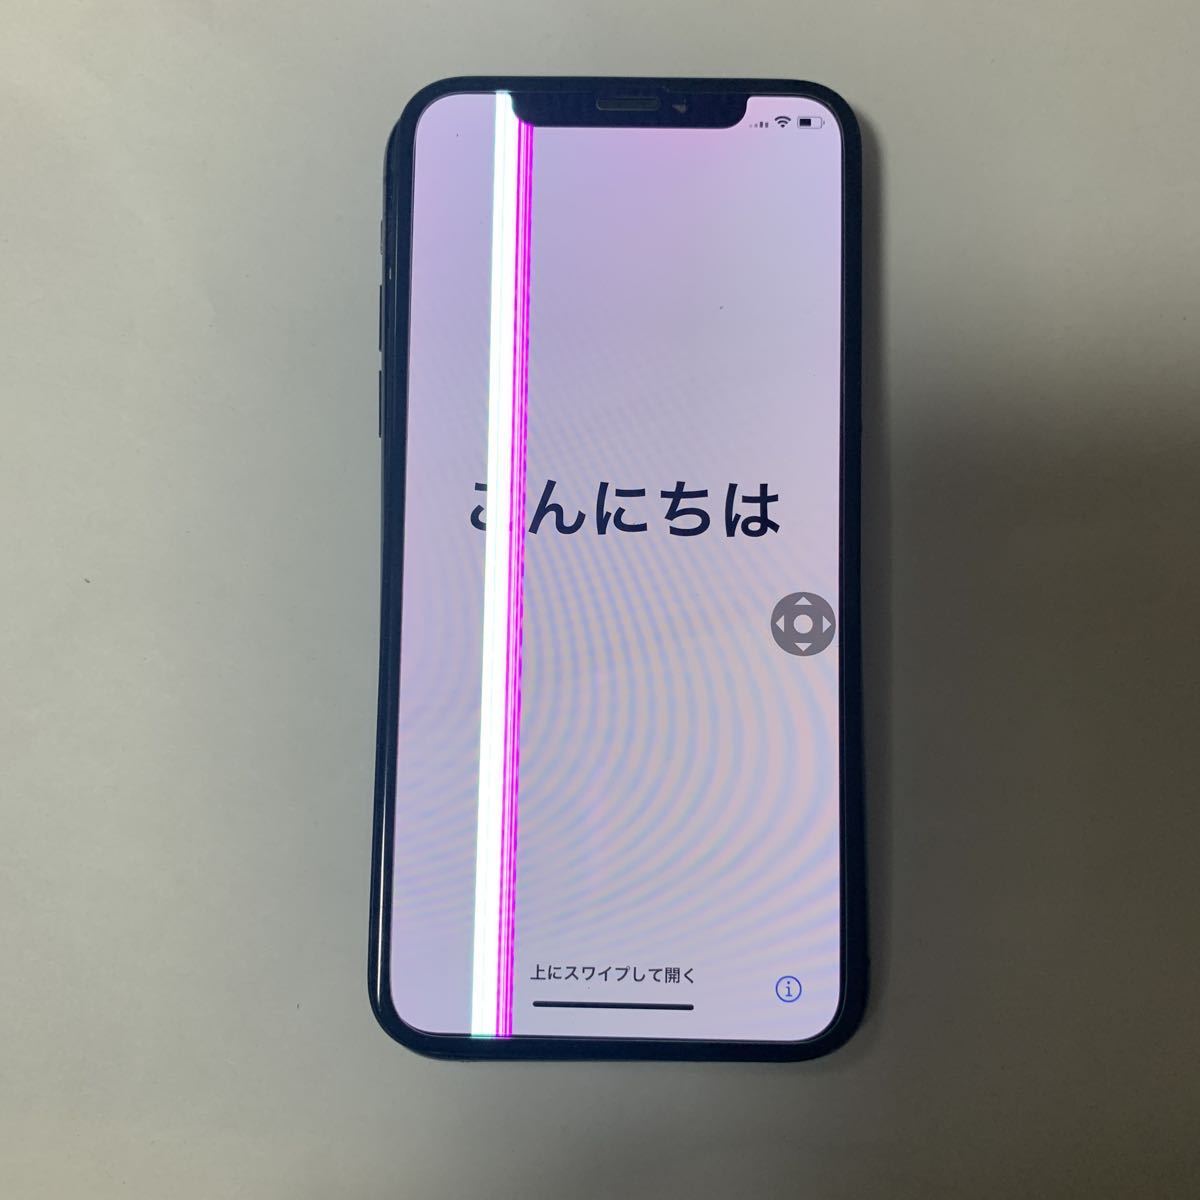 iPhone X жидкокристаллический экран оригинальный передняя панель * Junk (689)